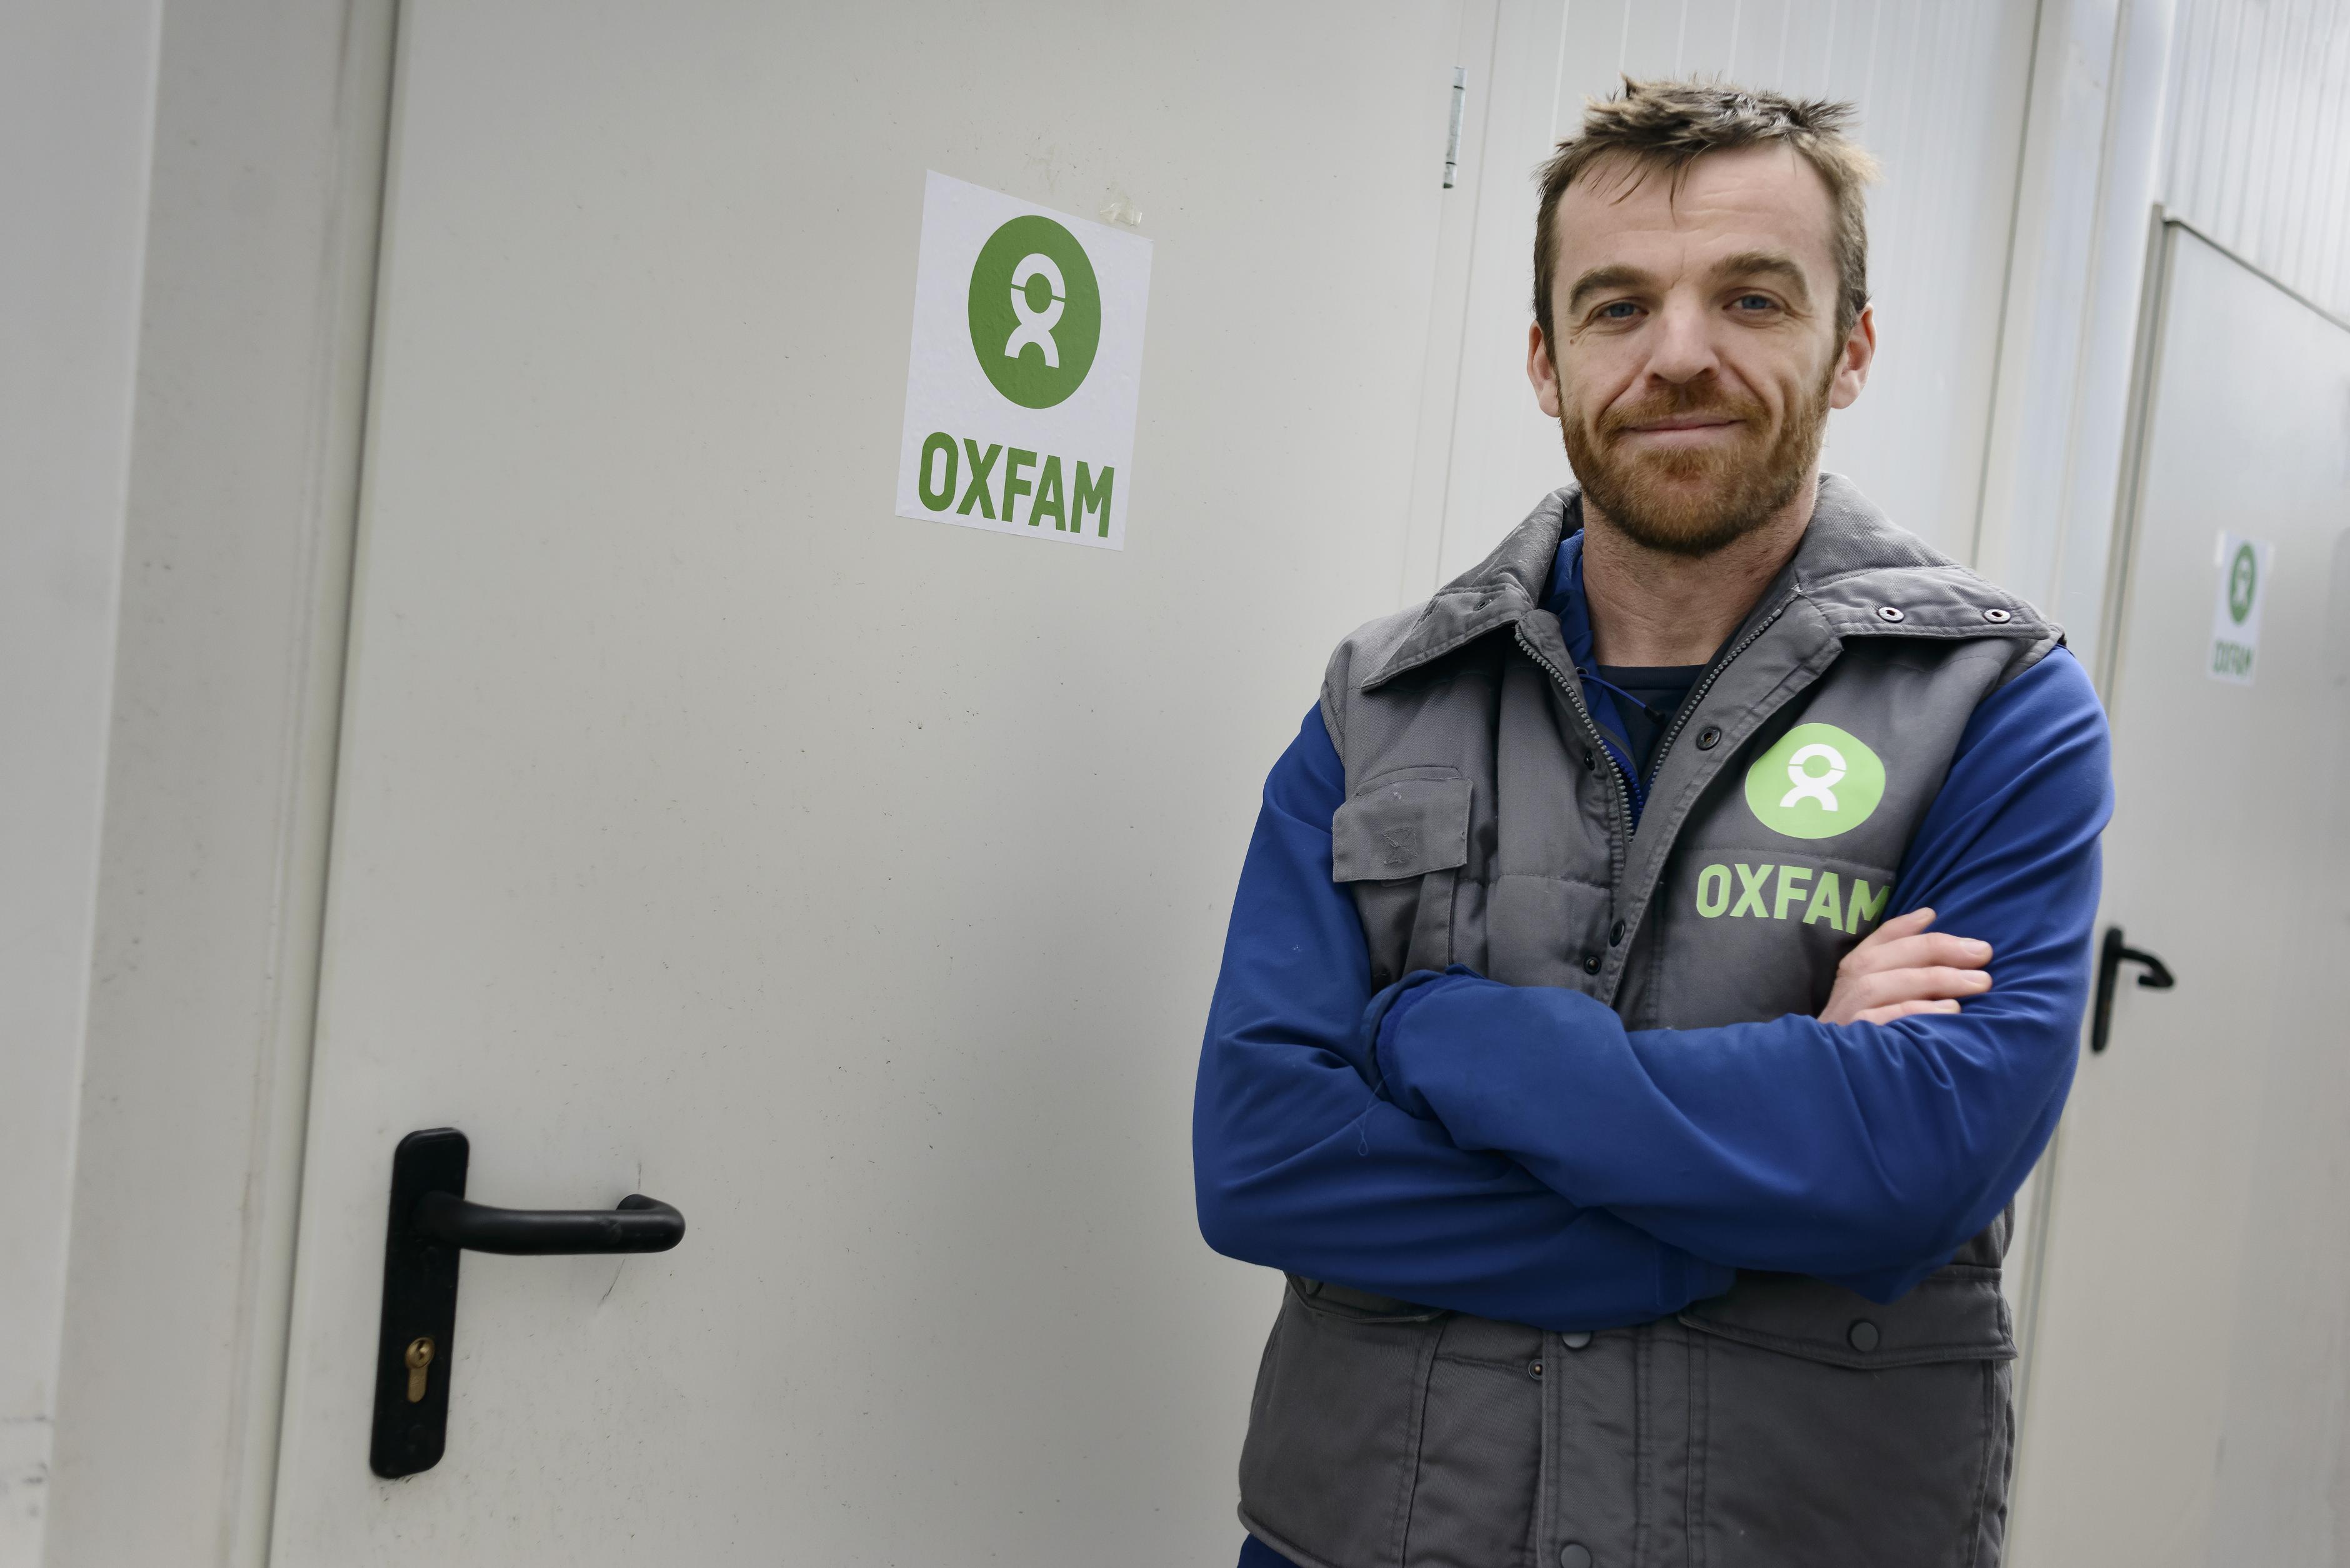 Angus Mc Bride steht vor einer Dusche mit dem Oxfam-Symbol auf der Tür. Er trägt einen blauen Pullover und eine graue Oxfam-Weste darüber.